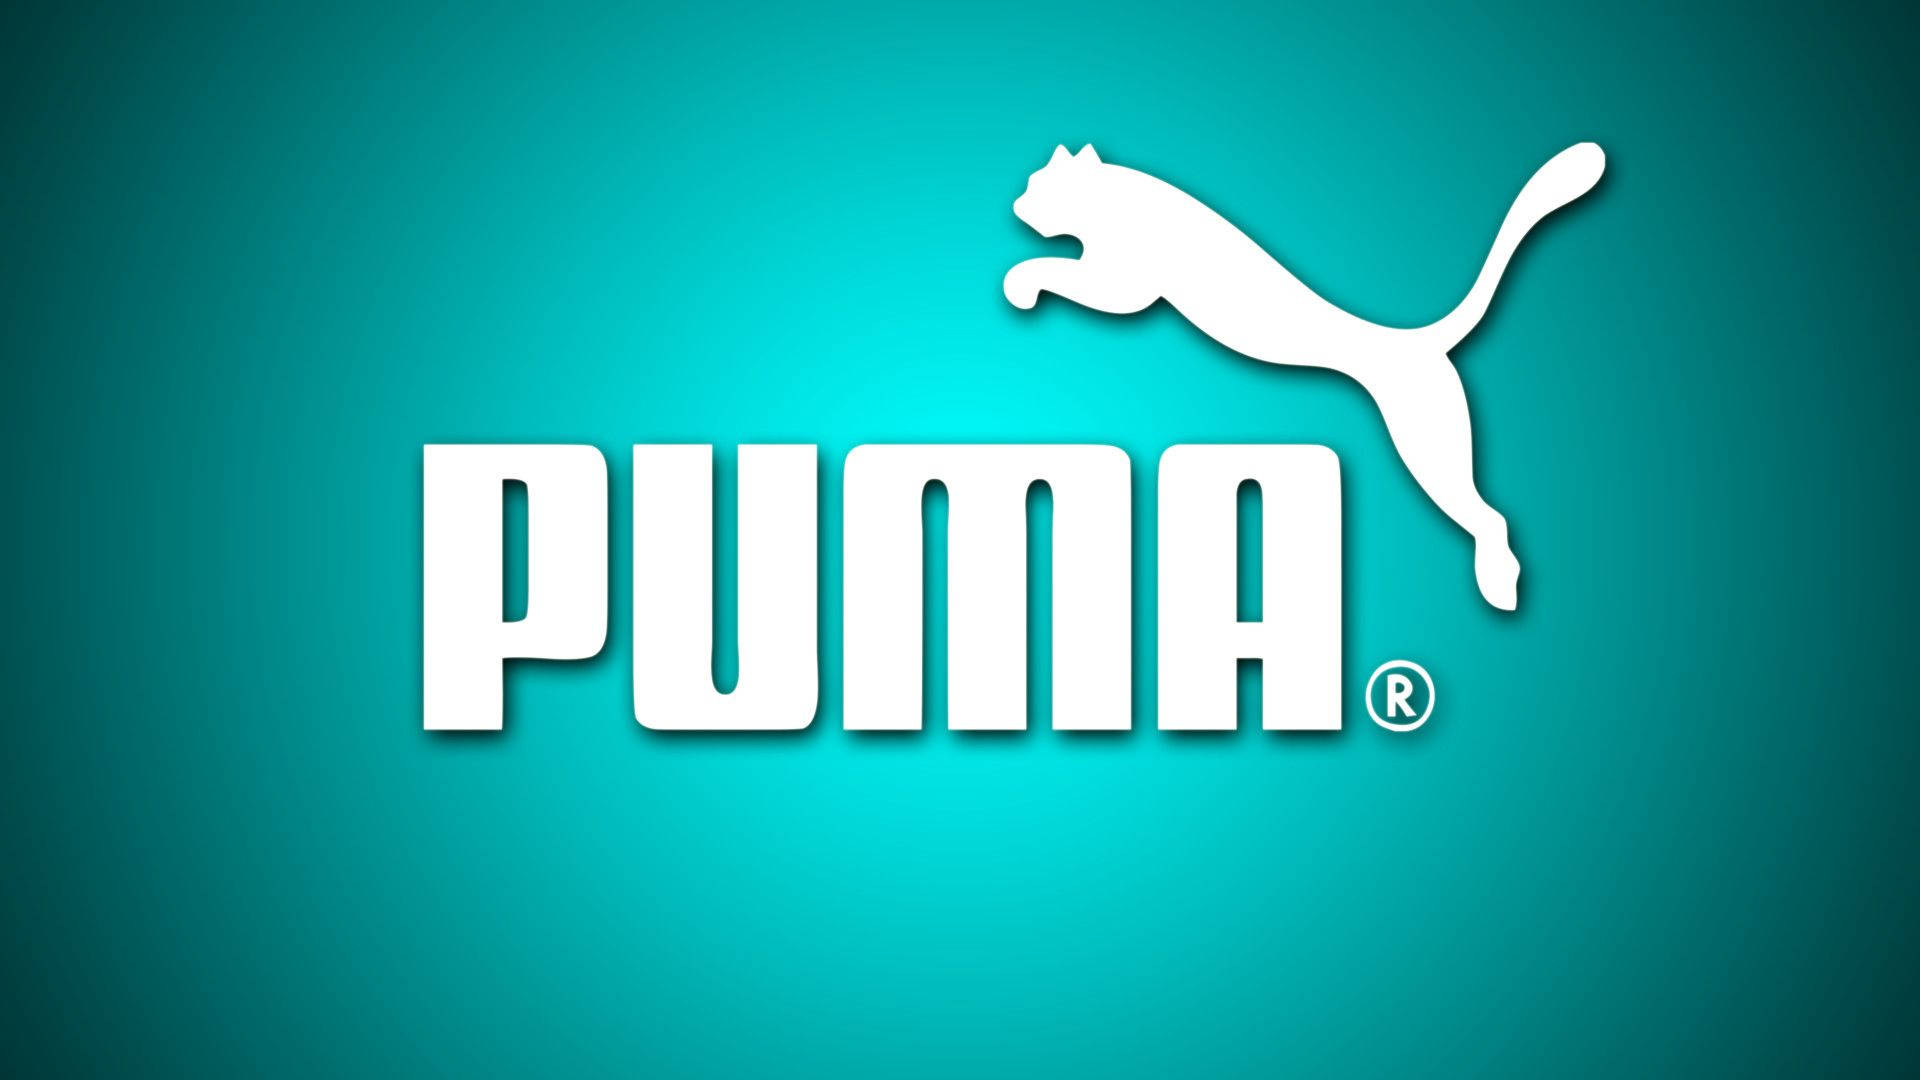 Download Puma Logo In Mint Green Wallpaper Wallpapers Com